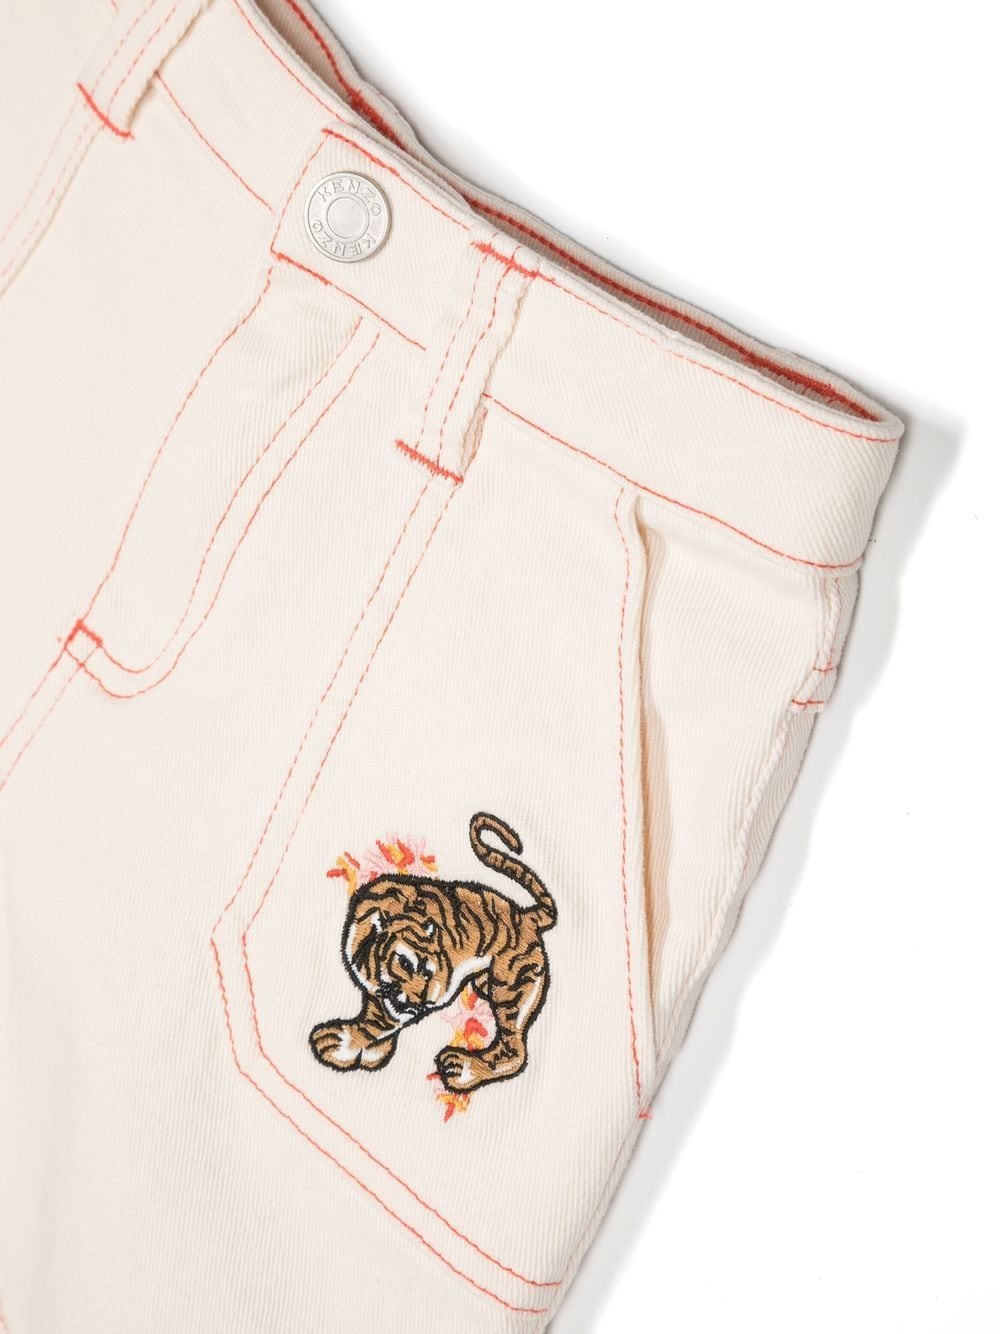 老虎刺绣对比缝线短裤